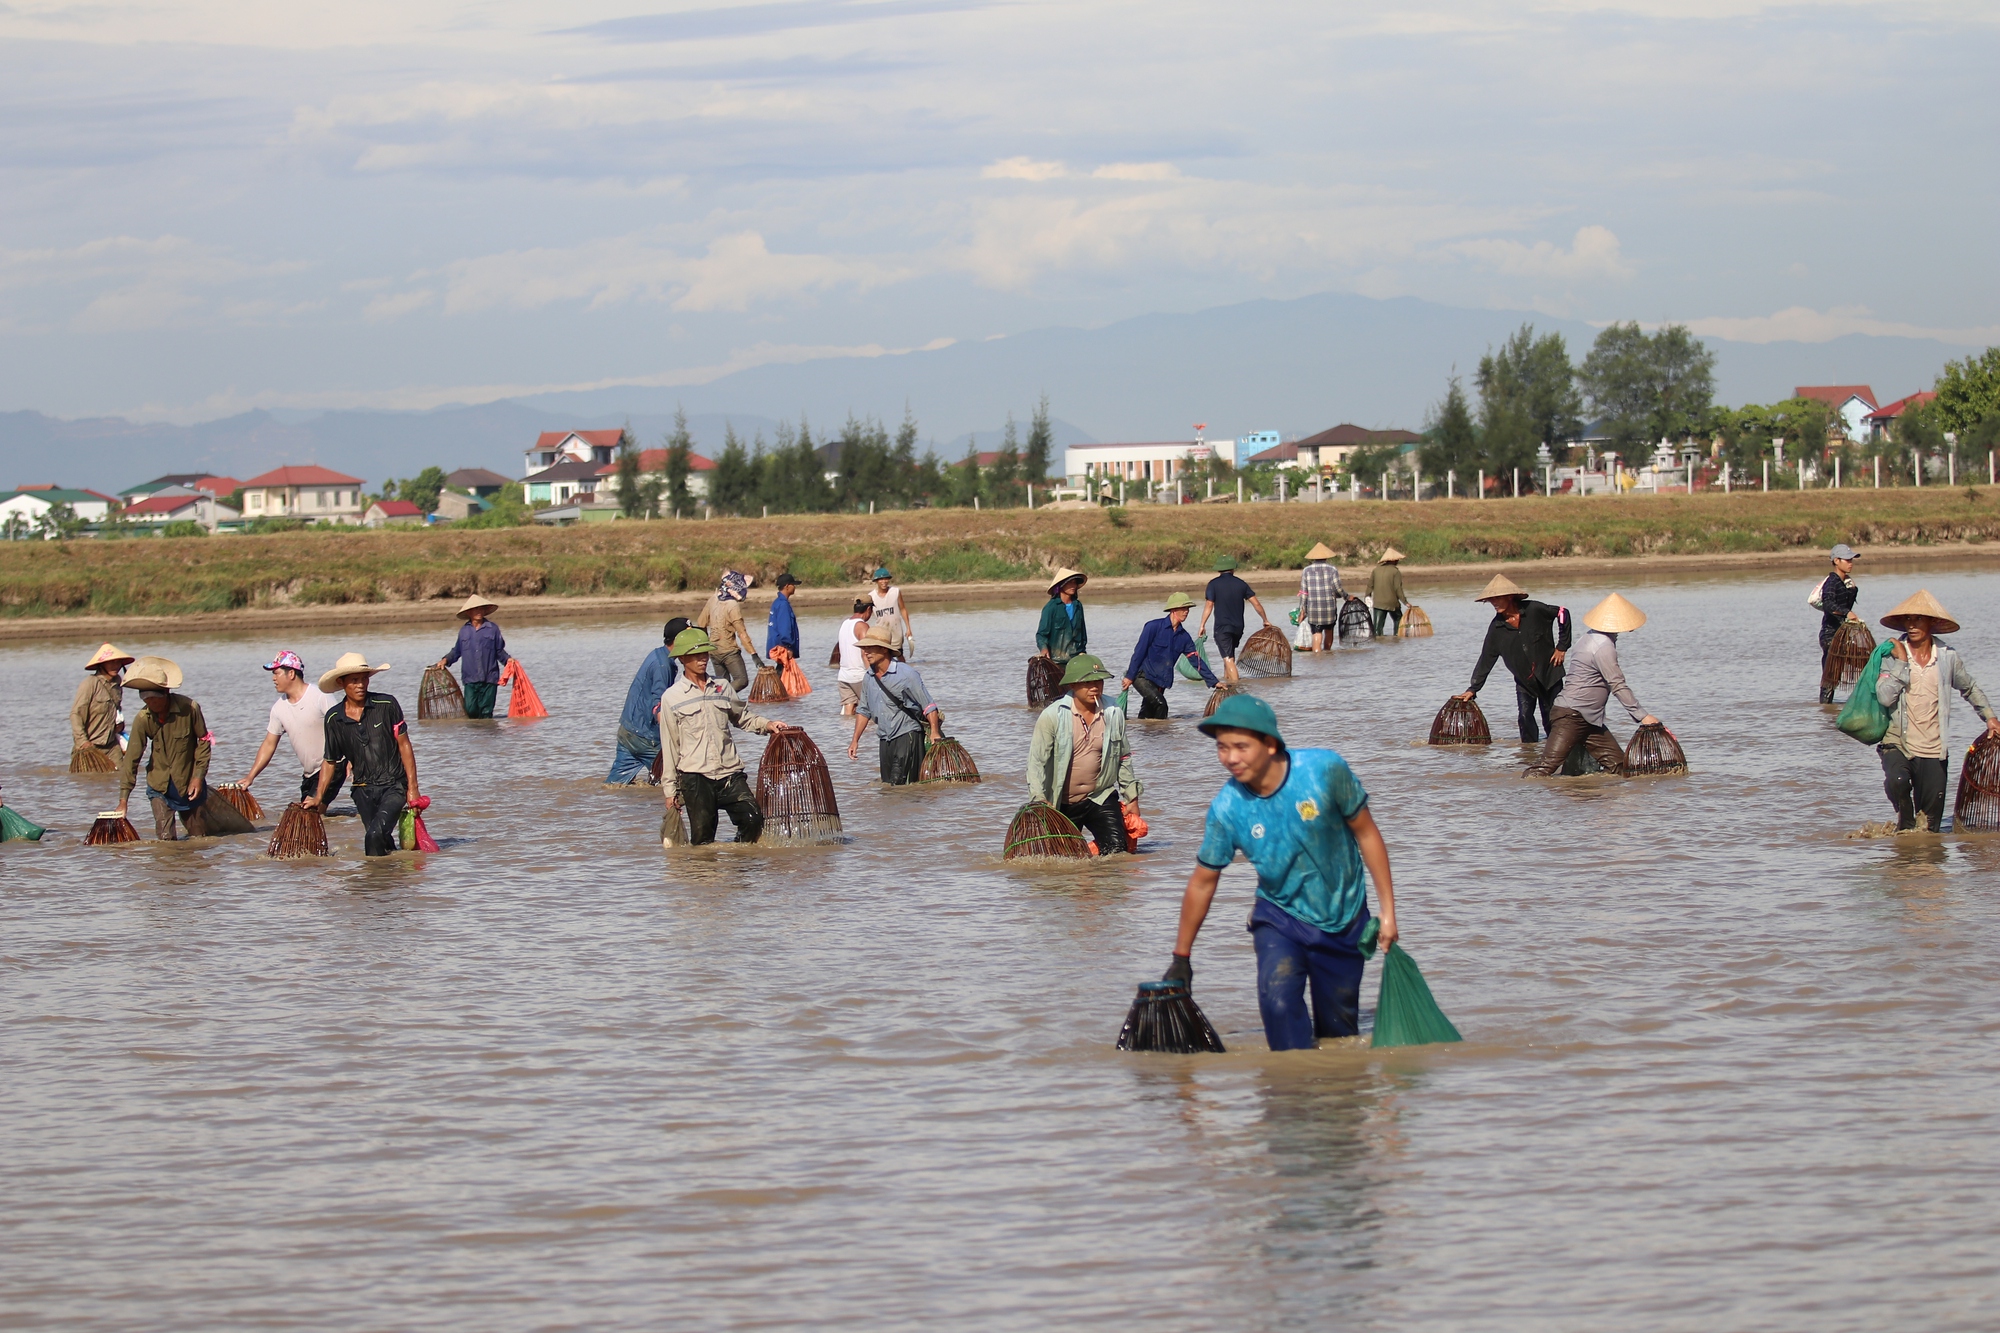 Dân làng đổ xô xuống hồ trữ nước để đánh bắt cá - Ảnh 1.